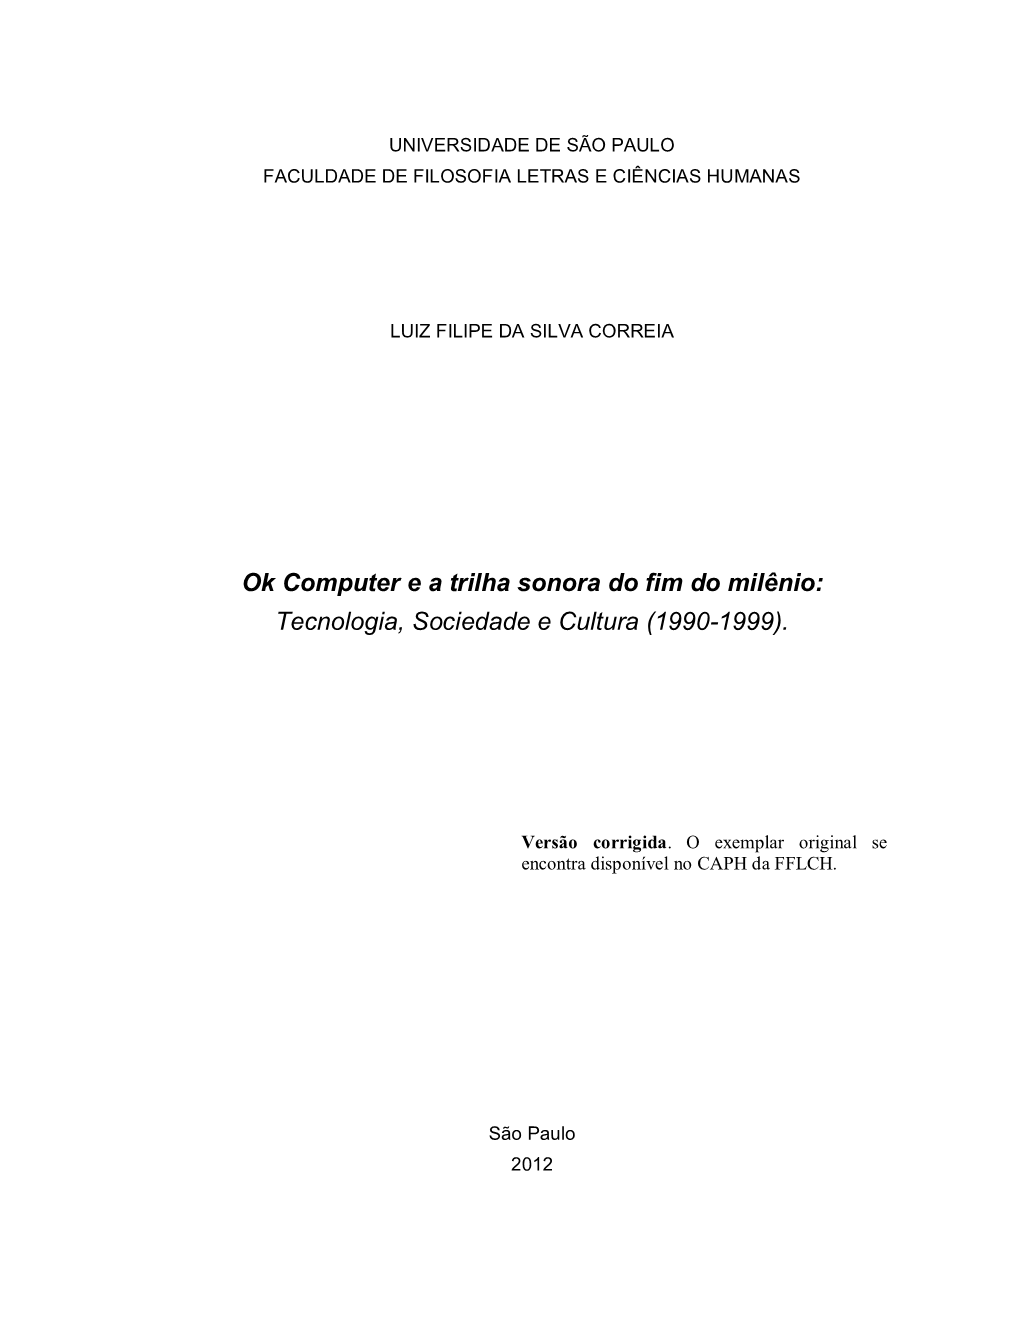 Ok Computer E a Trilha Sonora Do Fim Do Milênio: Tecnologia, Sociedade E Cultura (1990-1999)